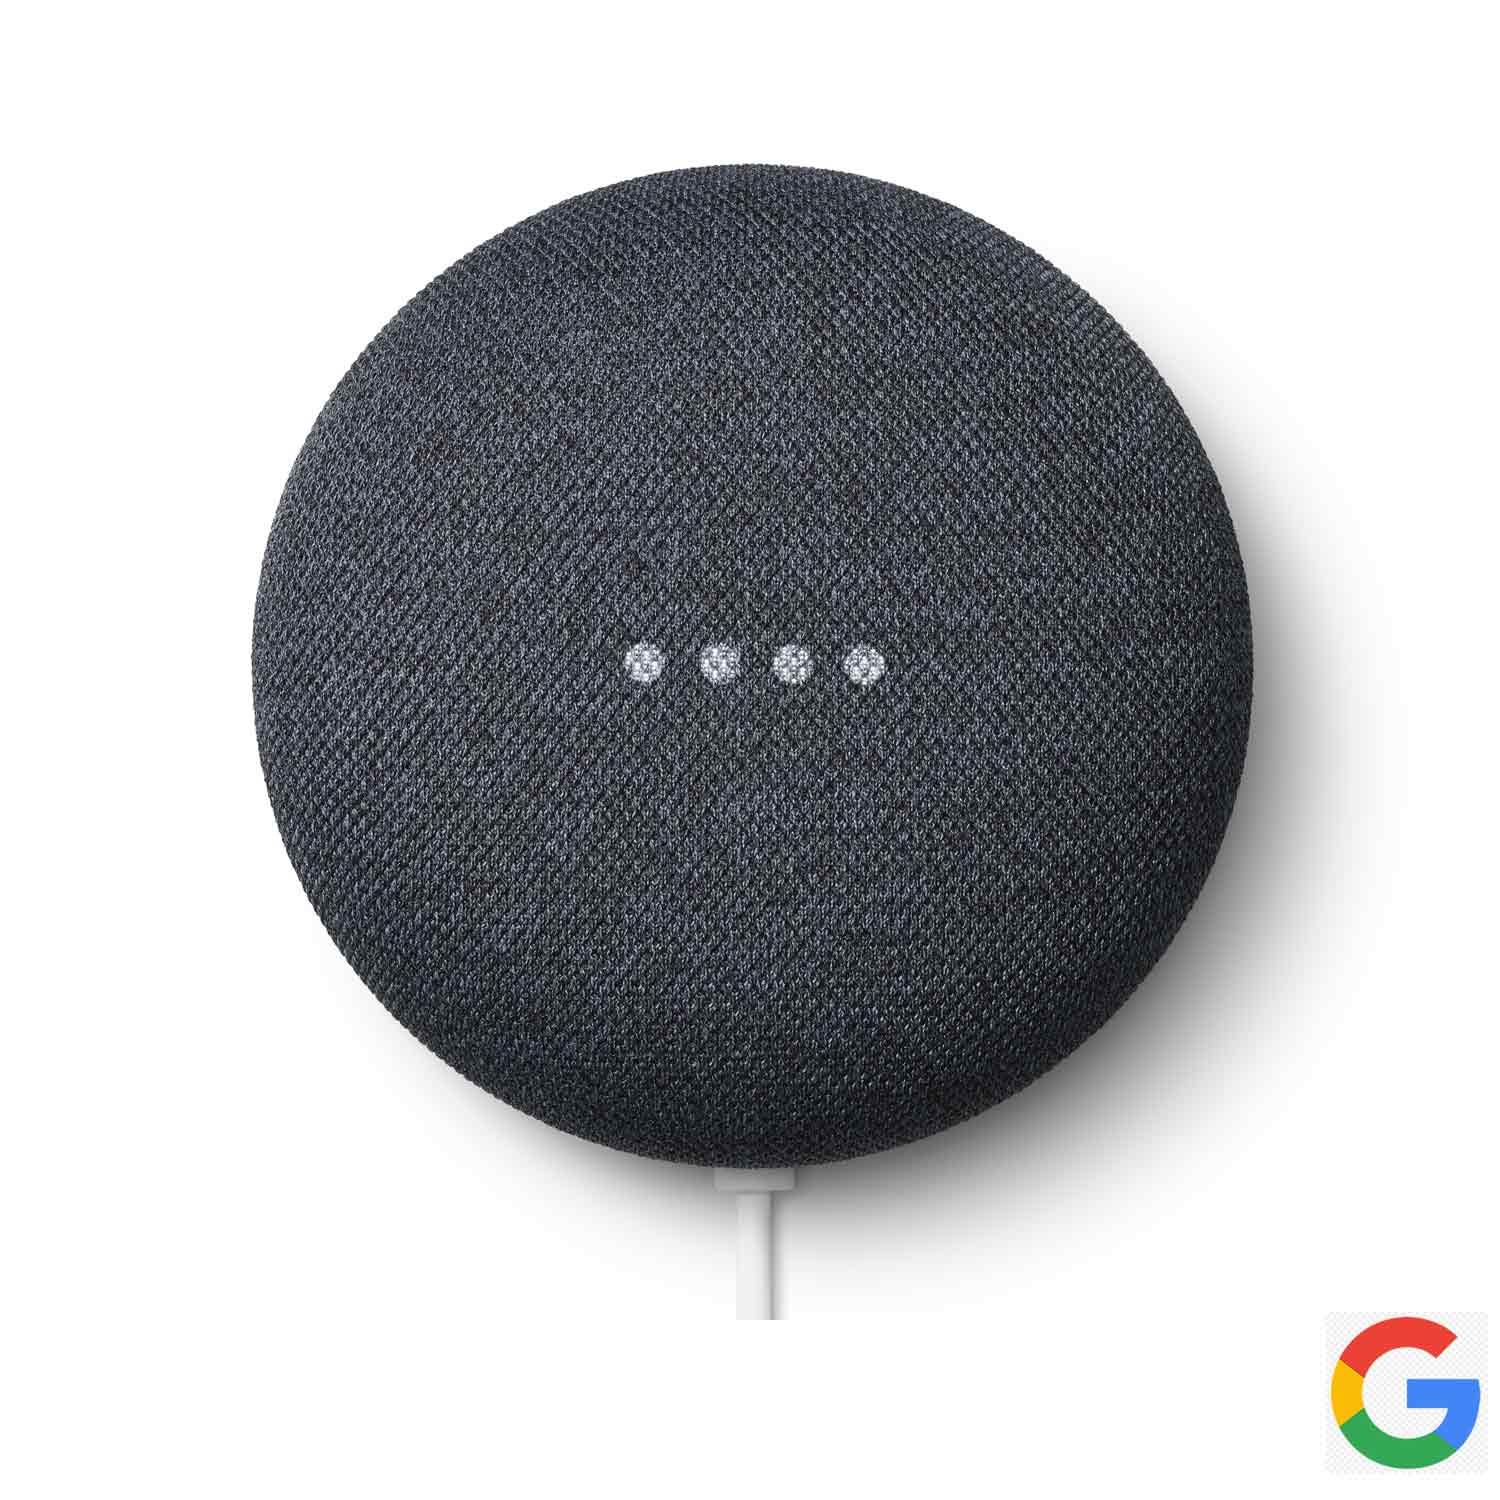 Imagem: Smart Speaker Google Nest Mini